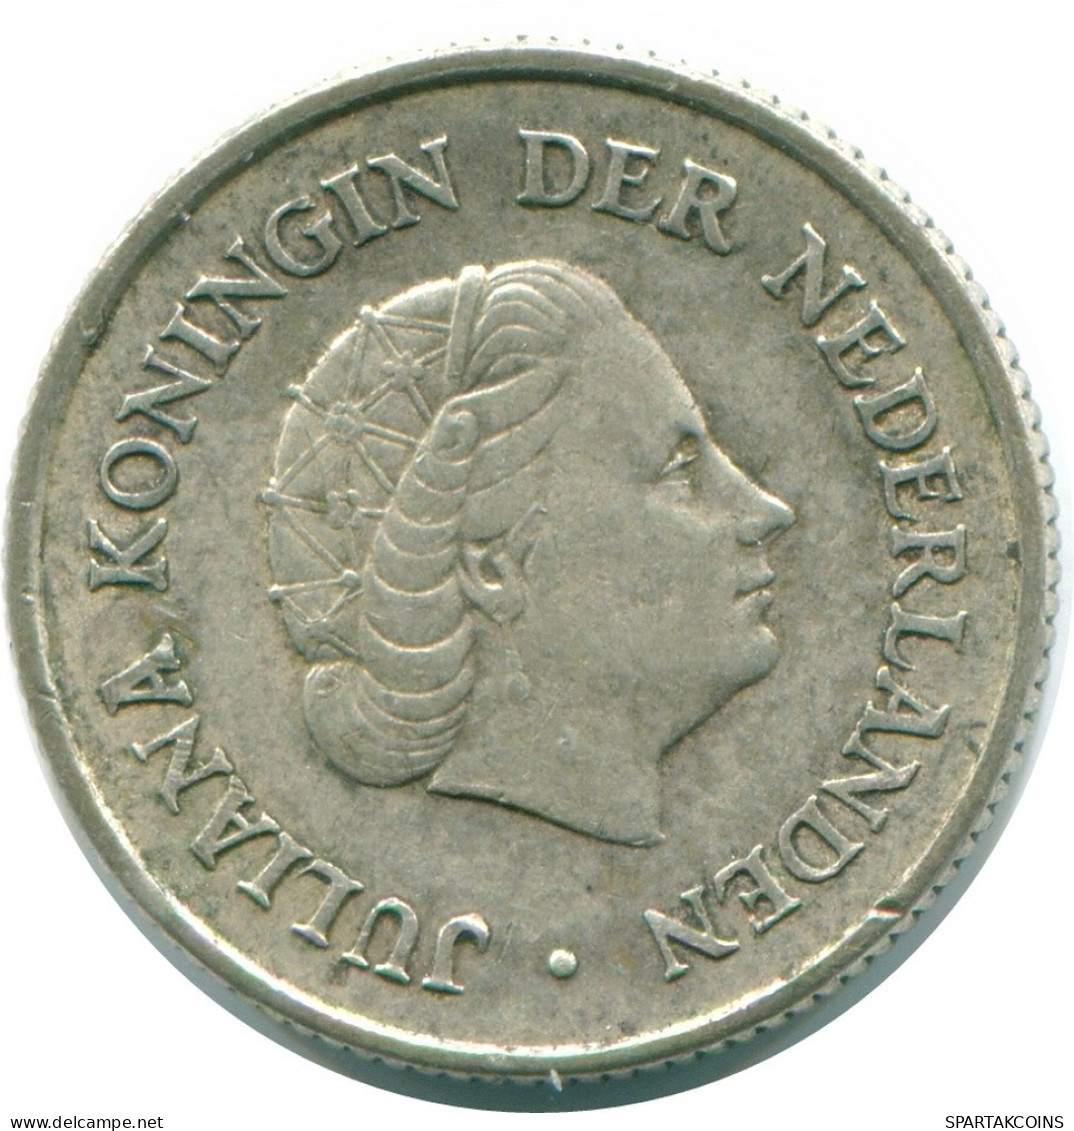 1/4 GULDEN 1965 NIEDERLÄNDISCHE ANTILLEN SILBER Koloniale Münze #NL11326.4.D.A - Nederlandse Antillen